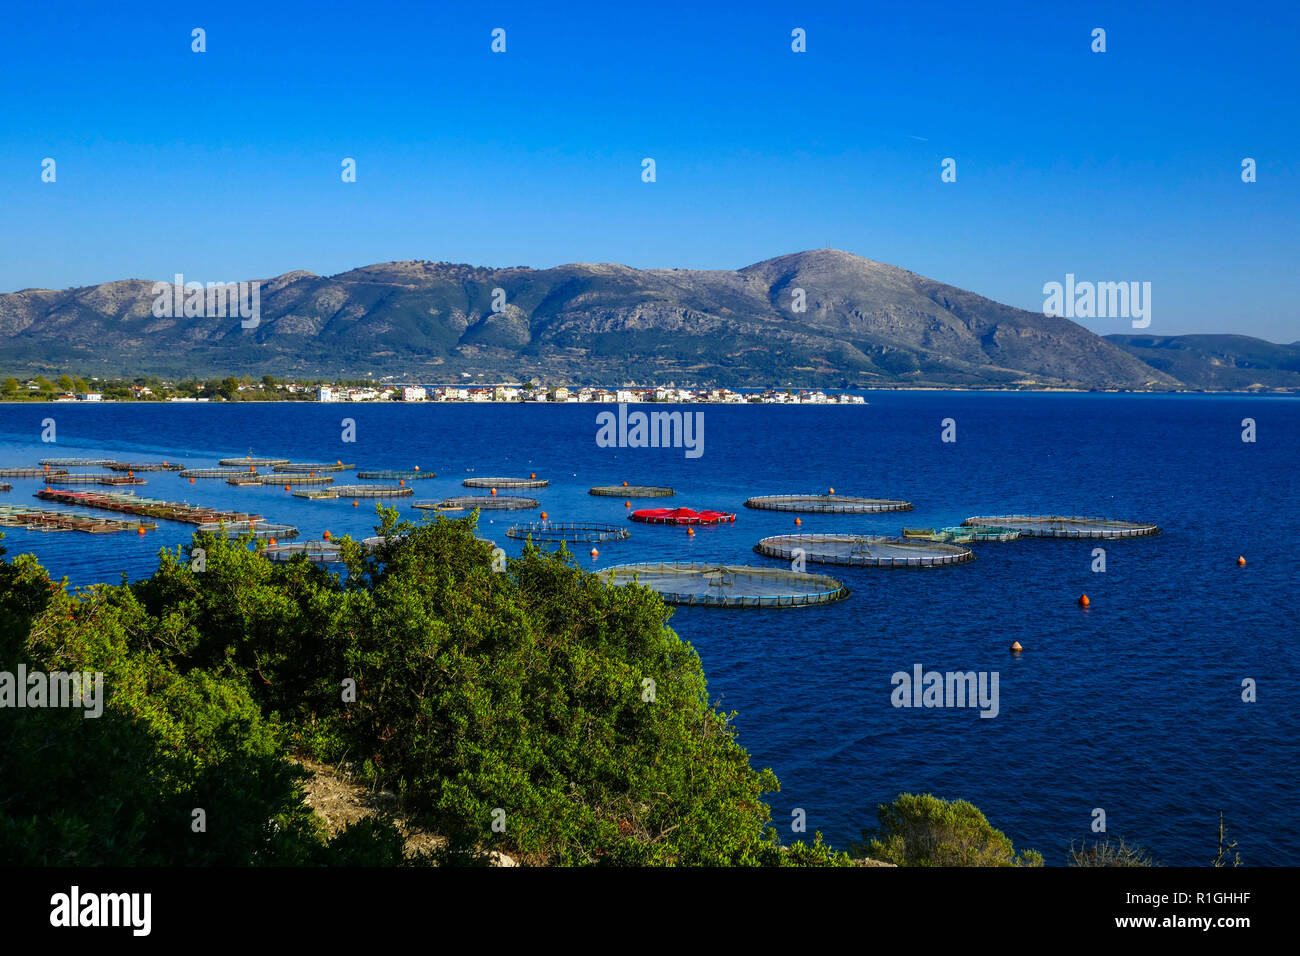 Fish-farm, fish farm, near the town of Mytikas, Ionian Sea, Greece Stock Photo